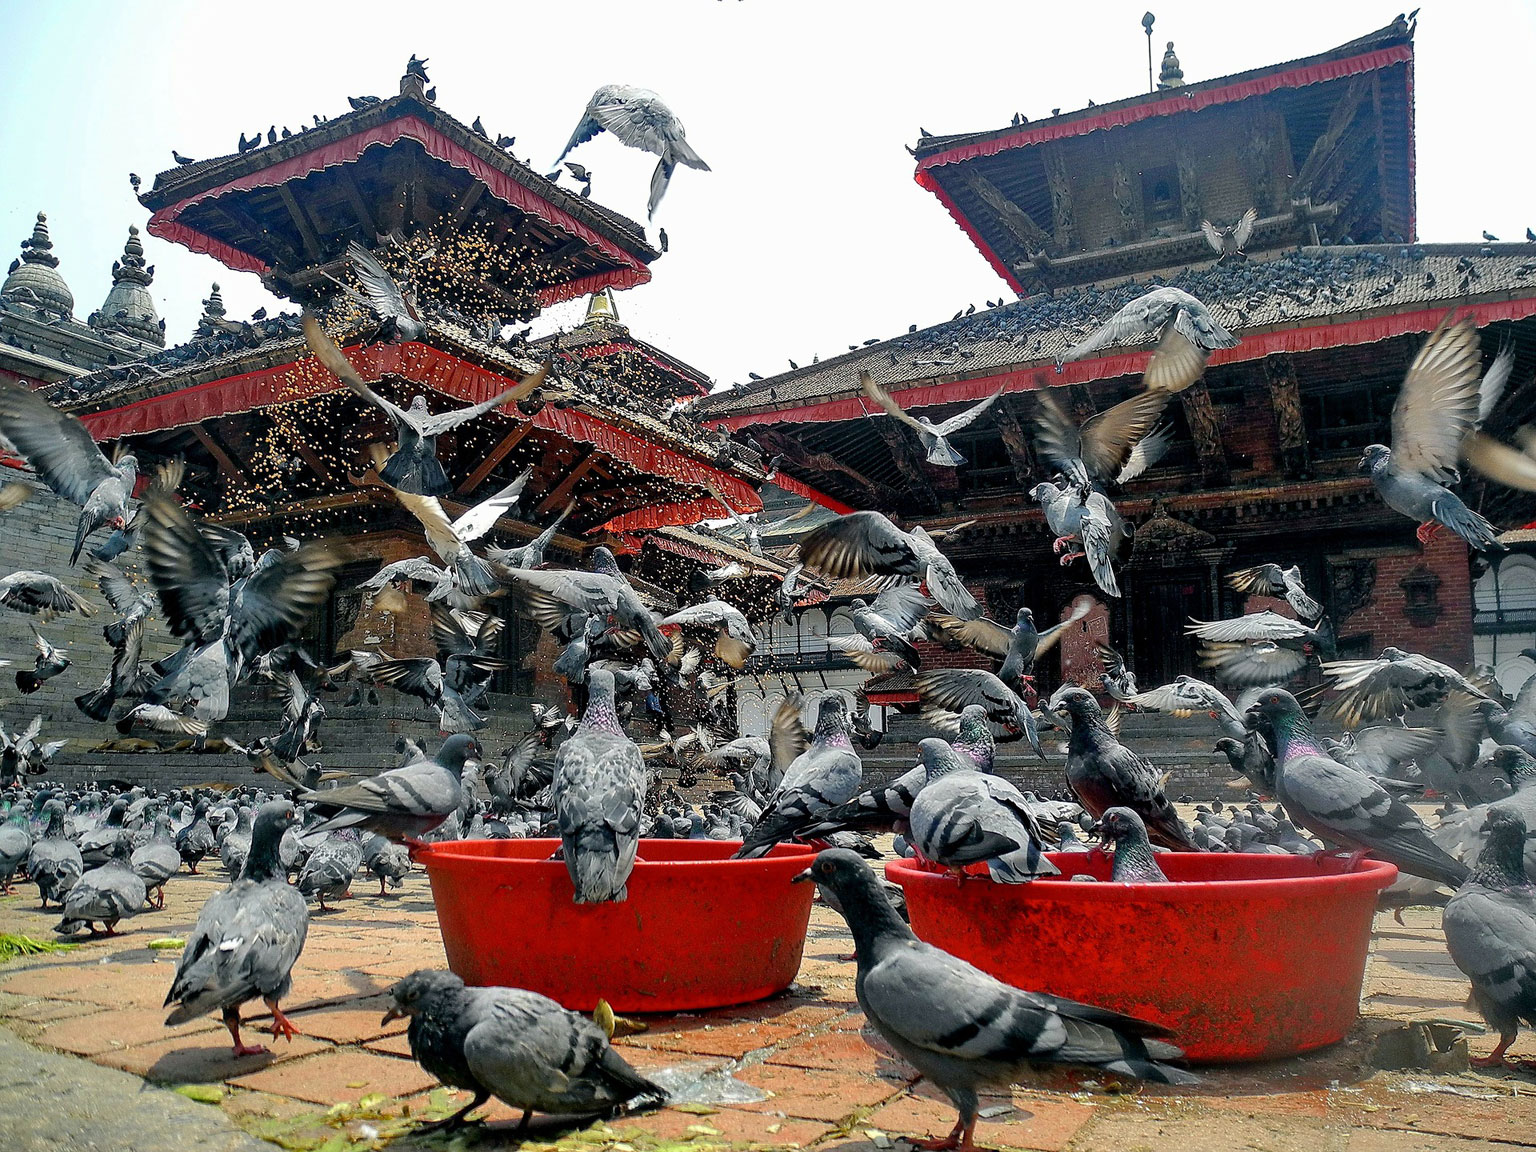 kathmandu-pigions-temples-everest-base-camp